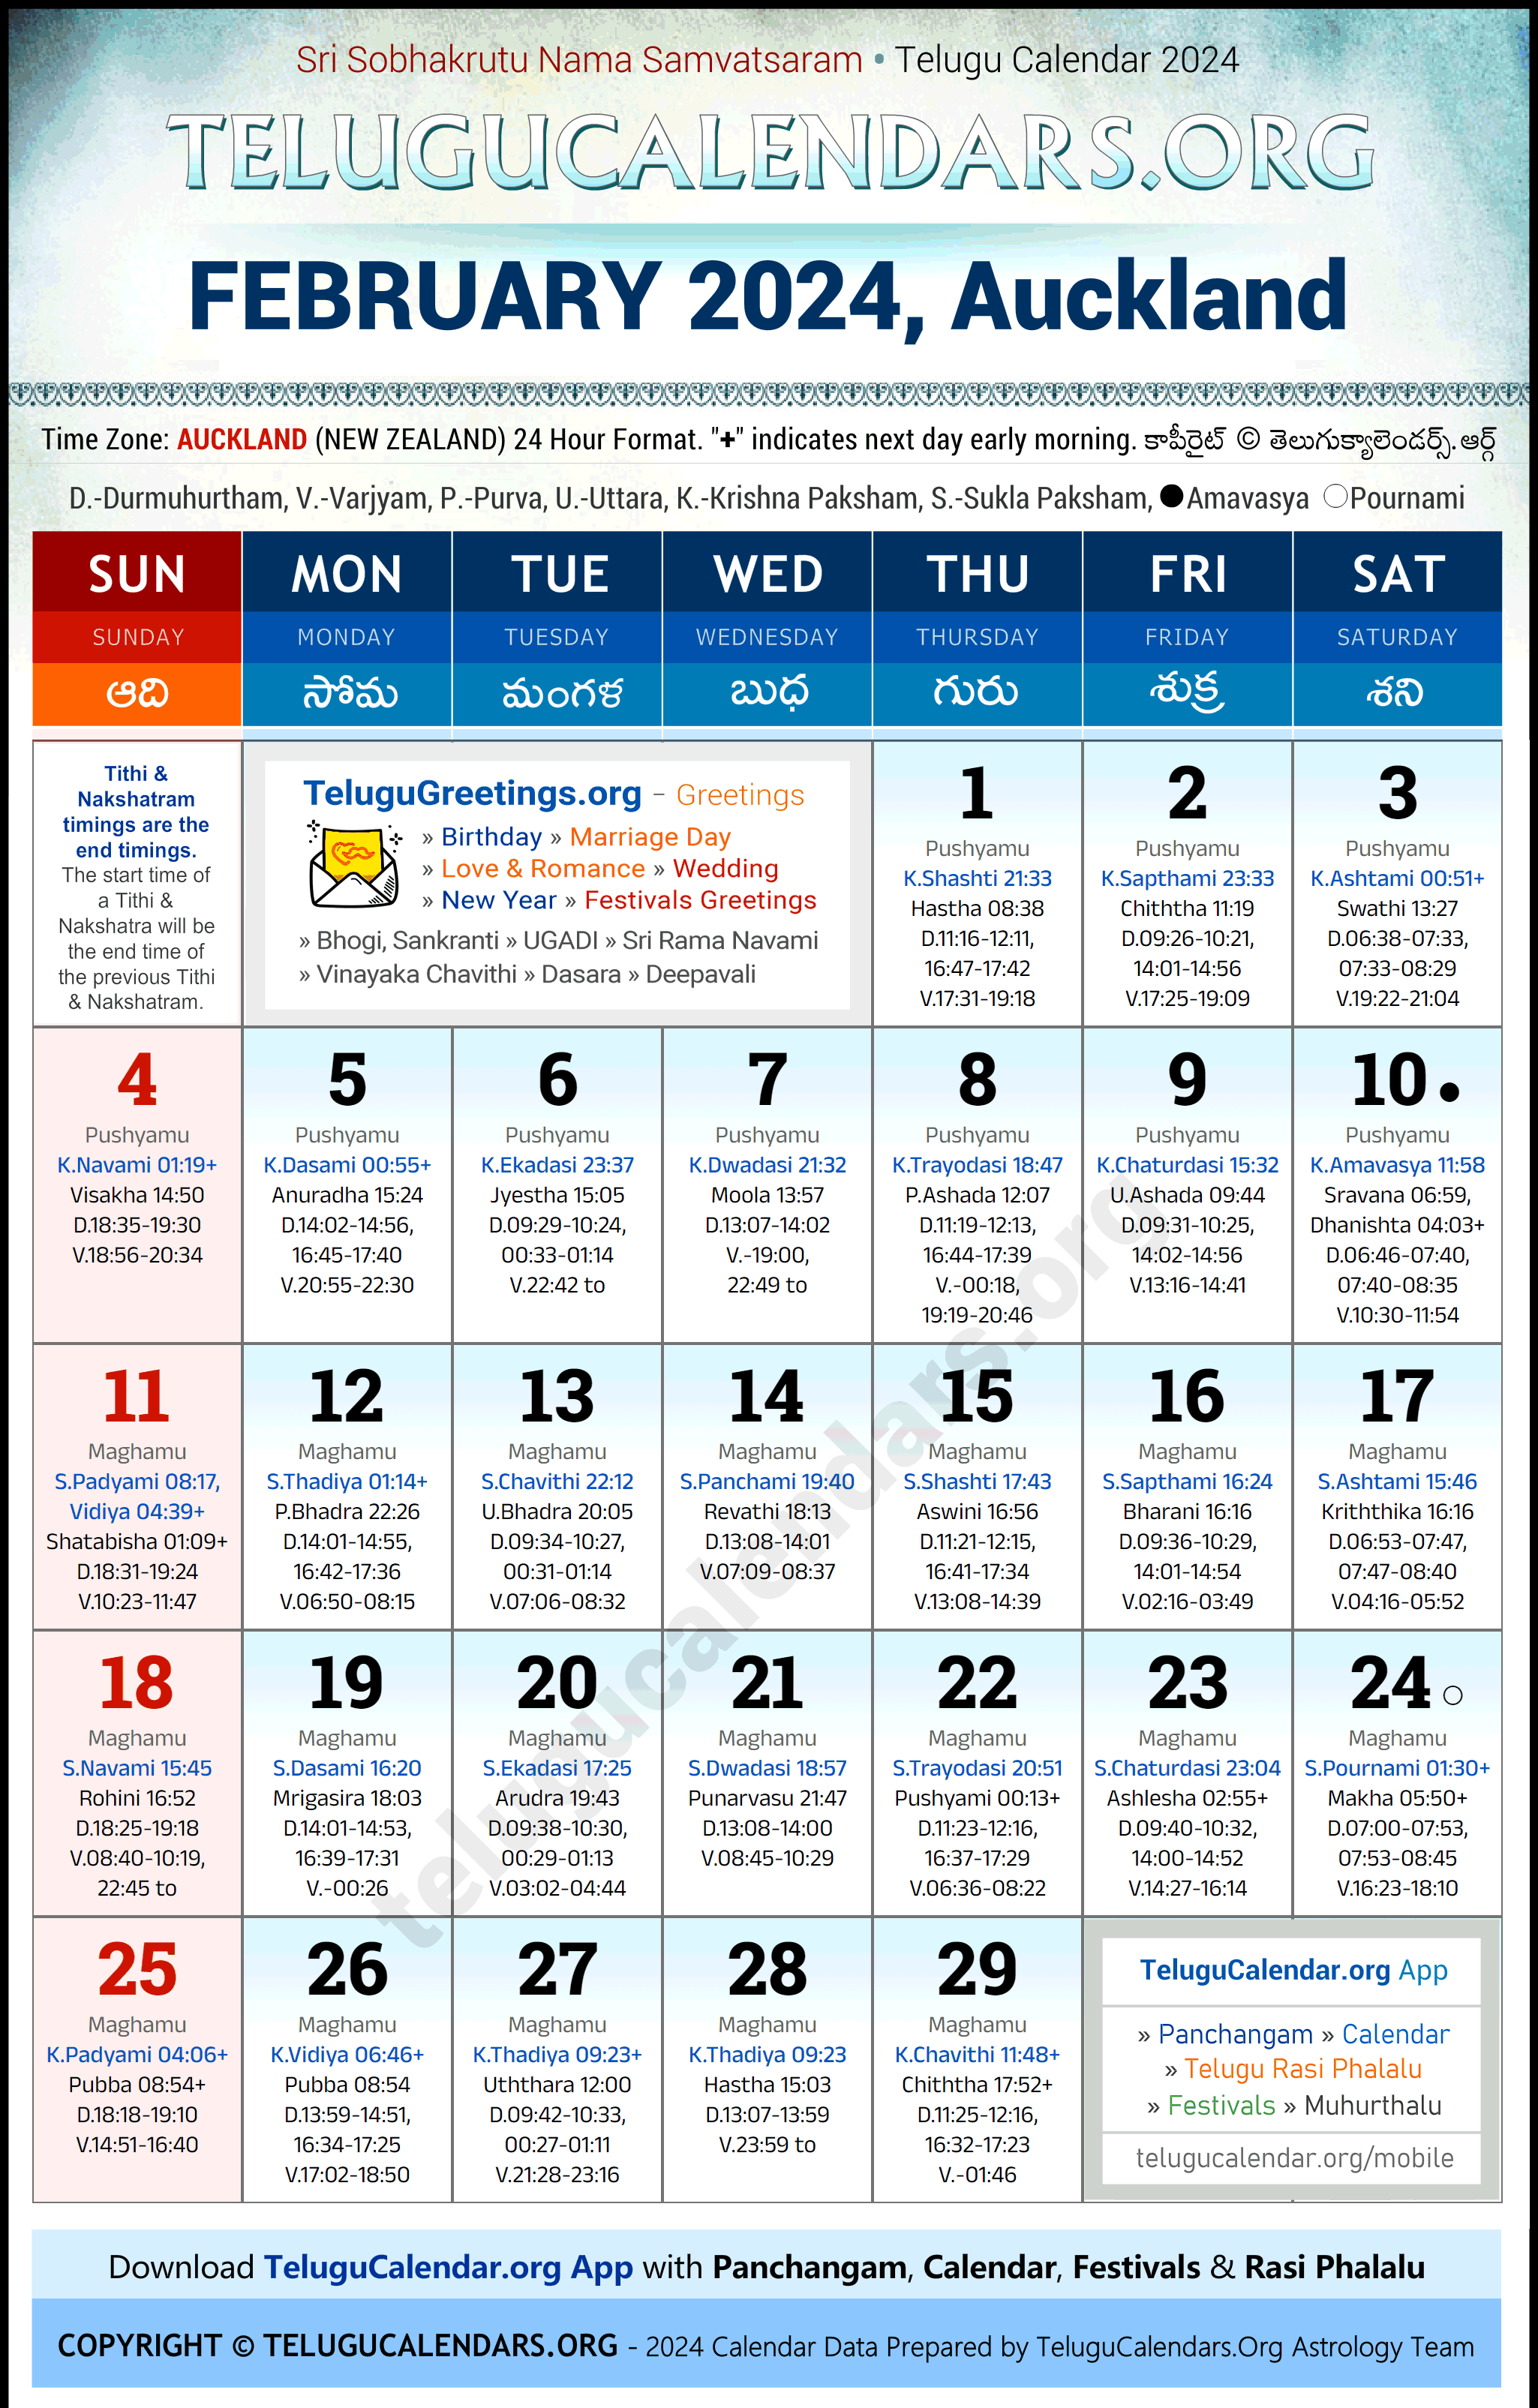 Telugu Calendar 2024 February Festivals for Auckland